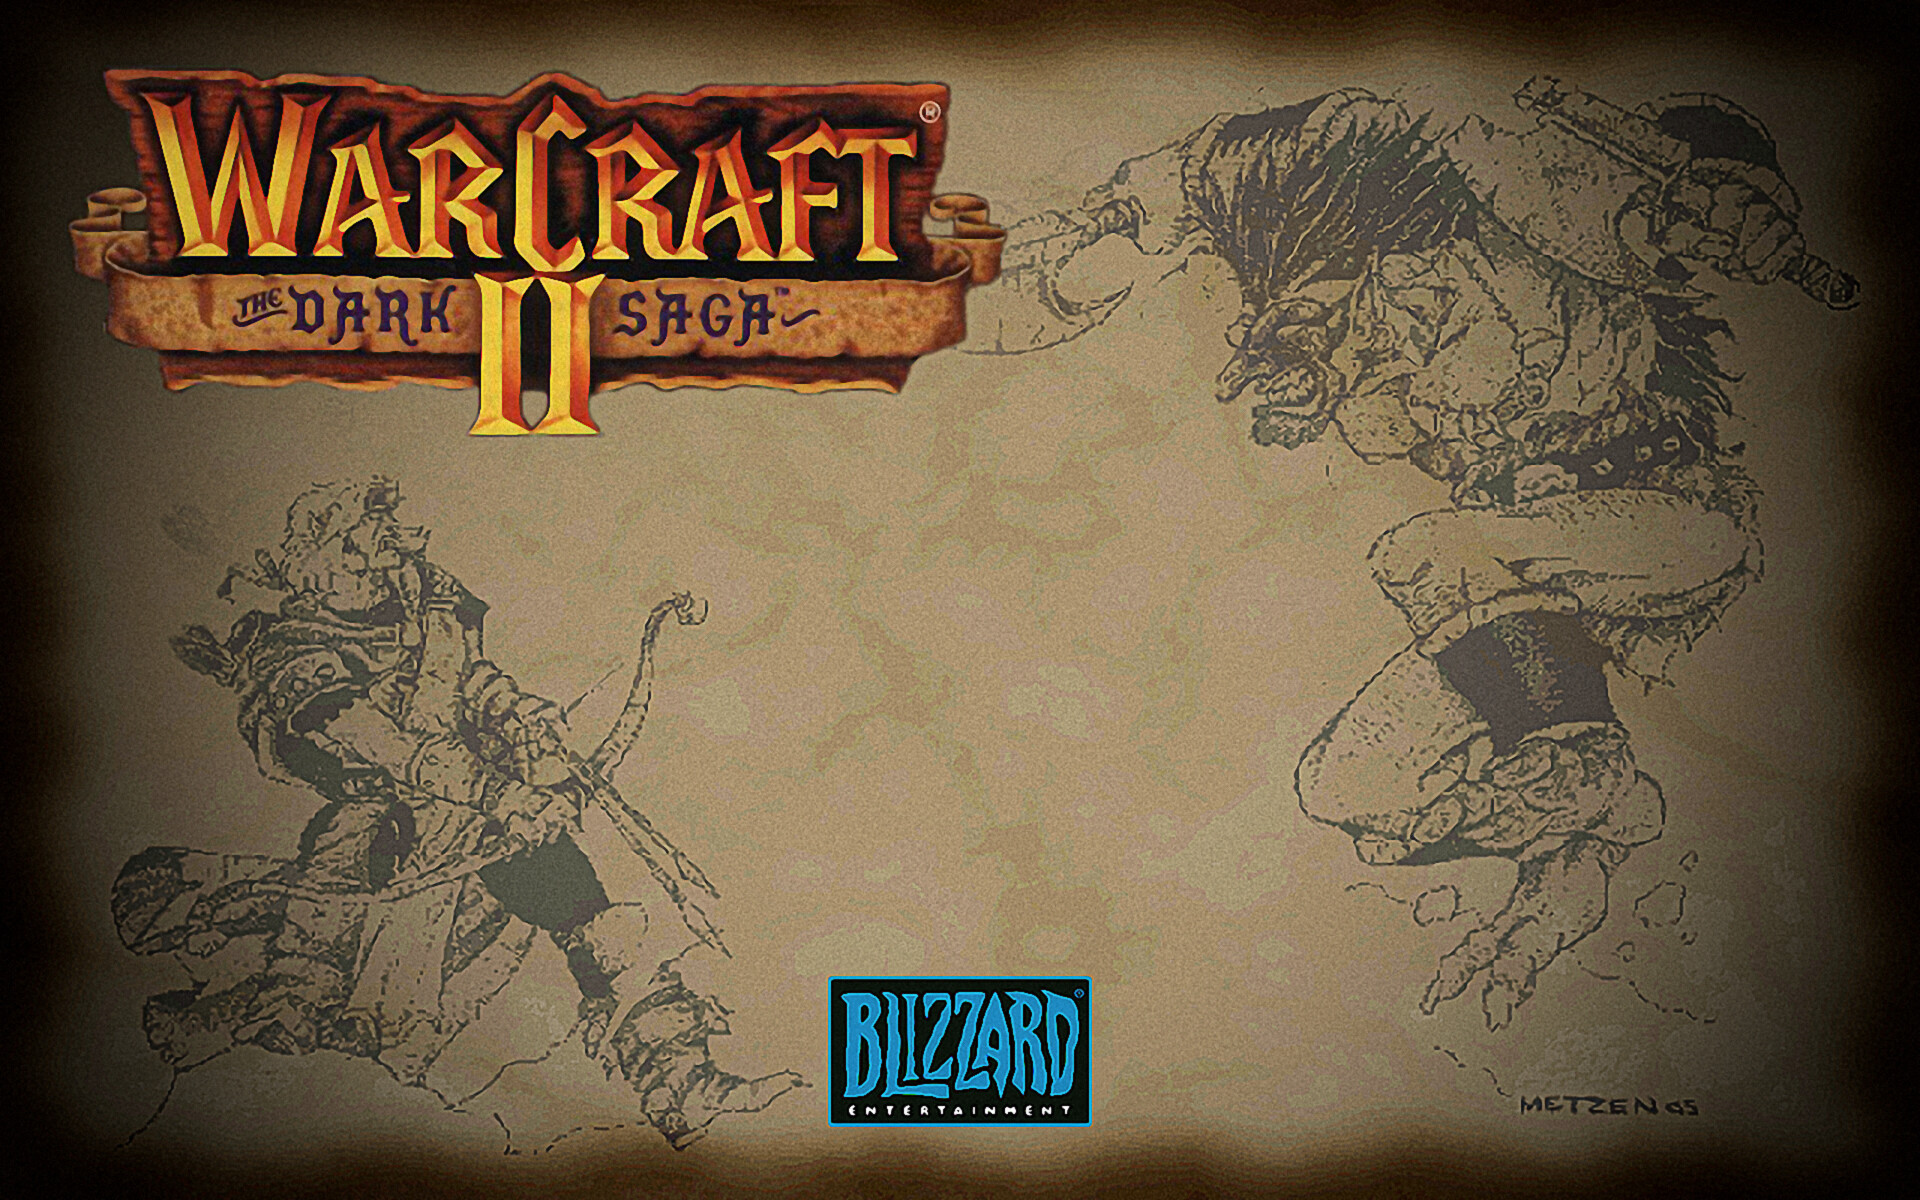 Warcraft II là một trò chơi huyền thoại trên thế giới game. Không chỉ là game giải trí, Warcraft II còn được xếp vào hàng \